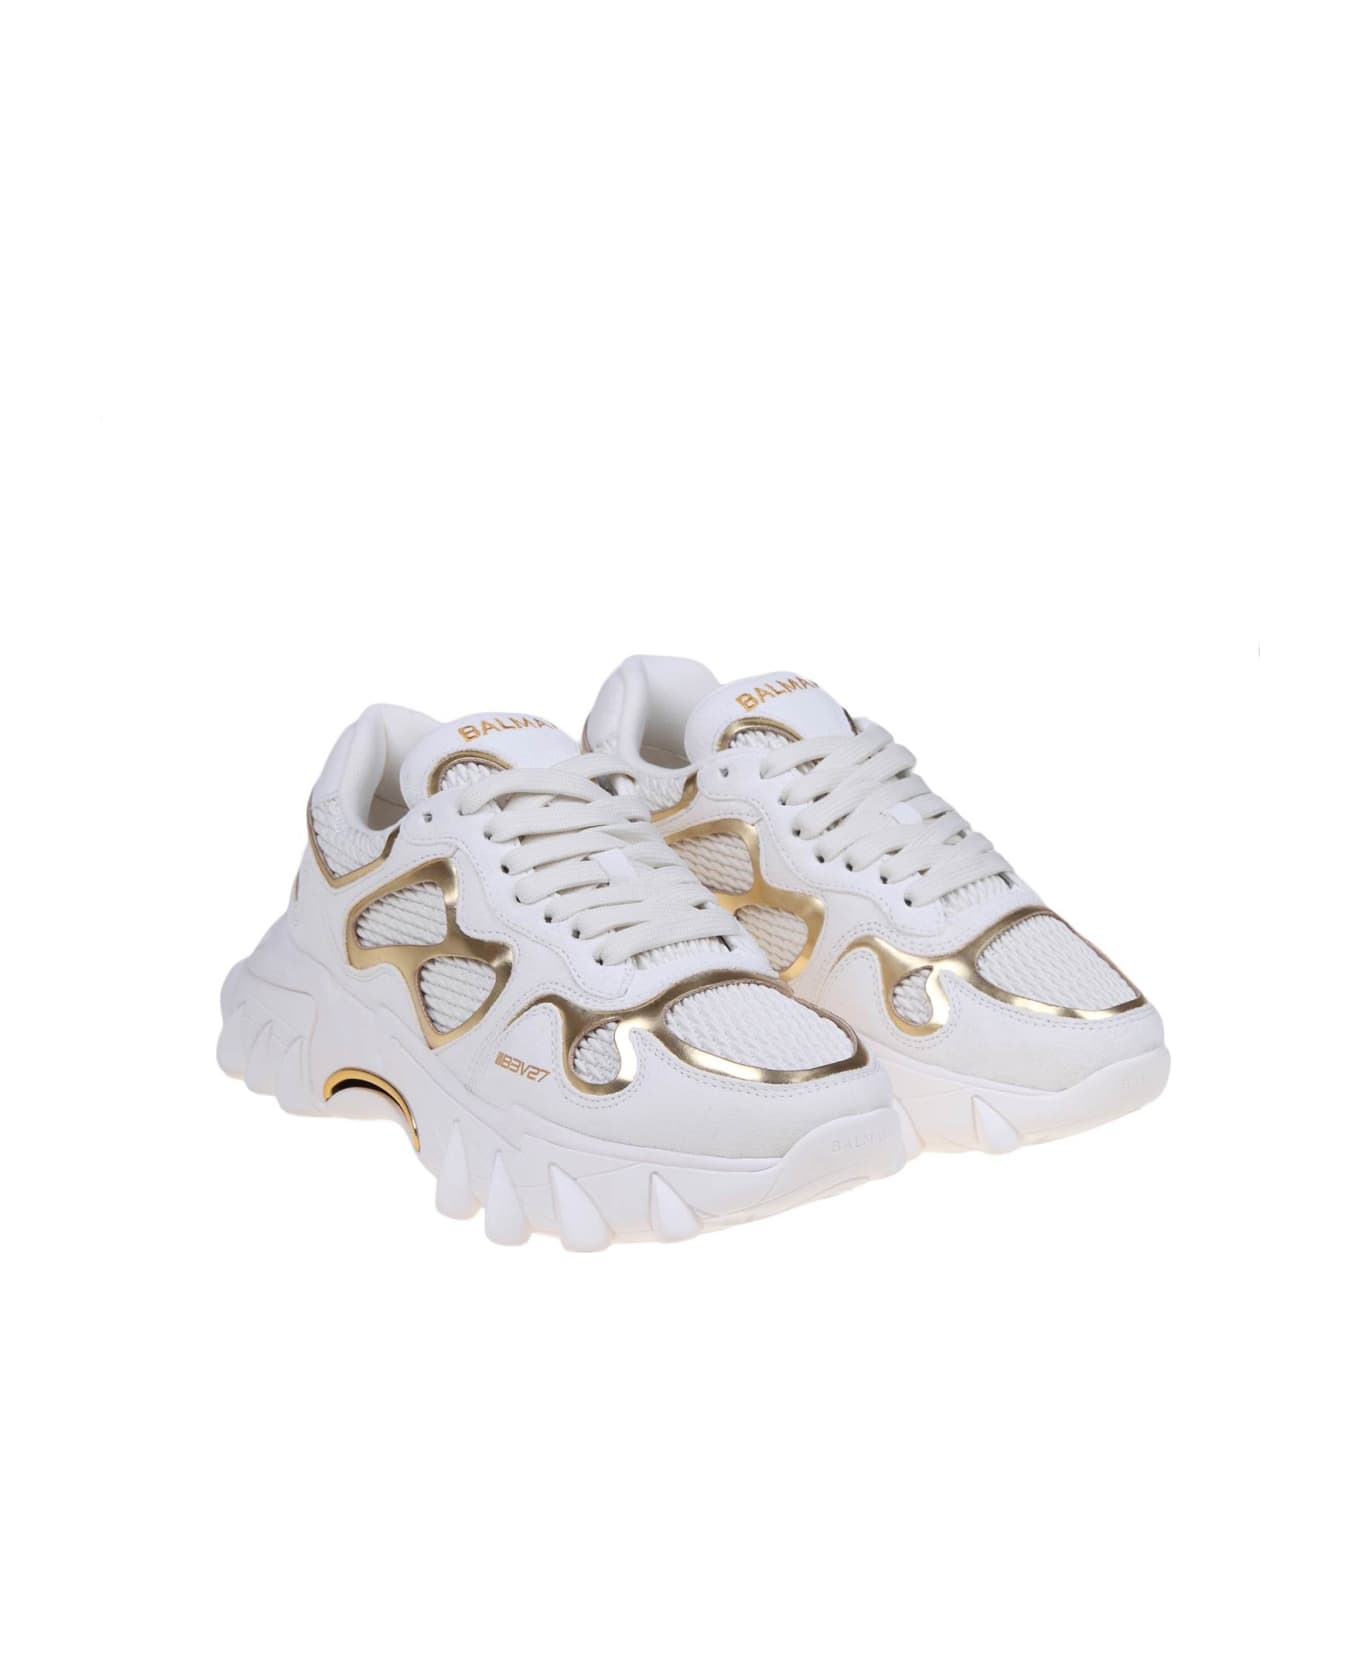 Balmain B-east Sneakers - White/Gold